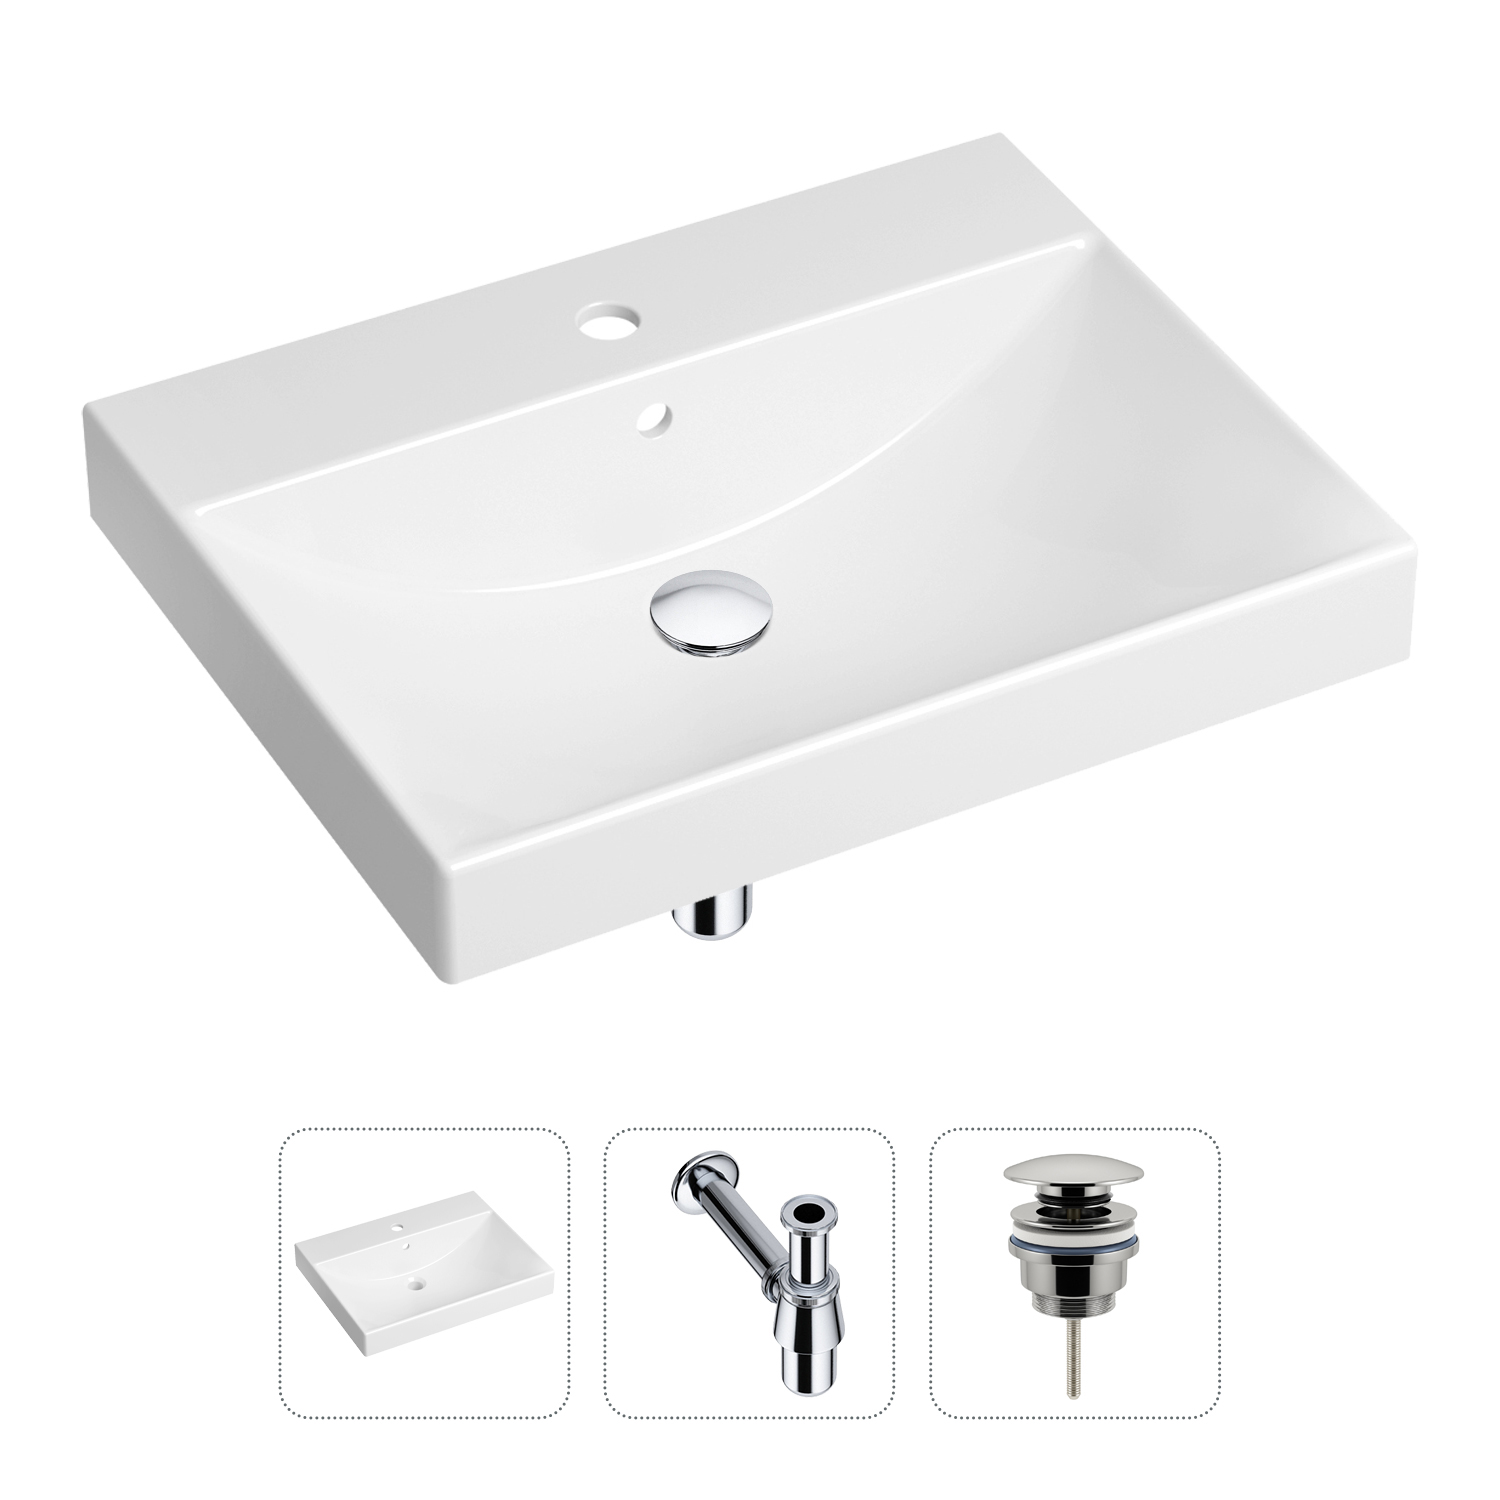 Комплект 3 в 1 Lavinia Boho Bathroom Sink 21520545: раковина 60 см, сифон, донный клапан